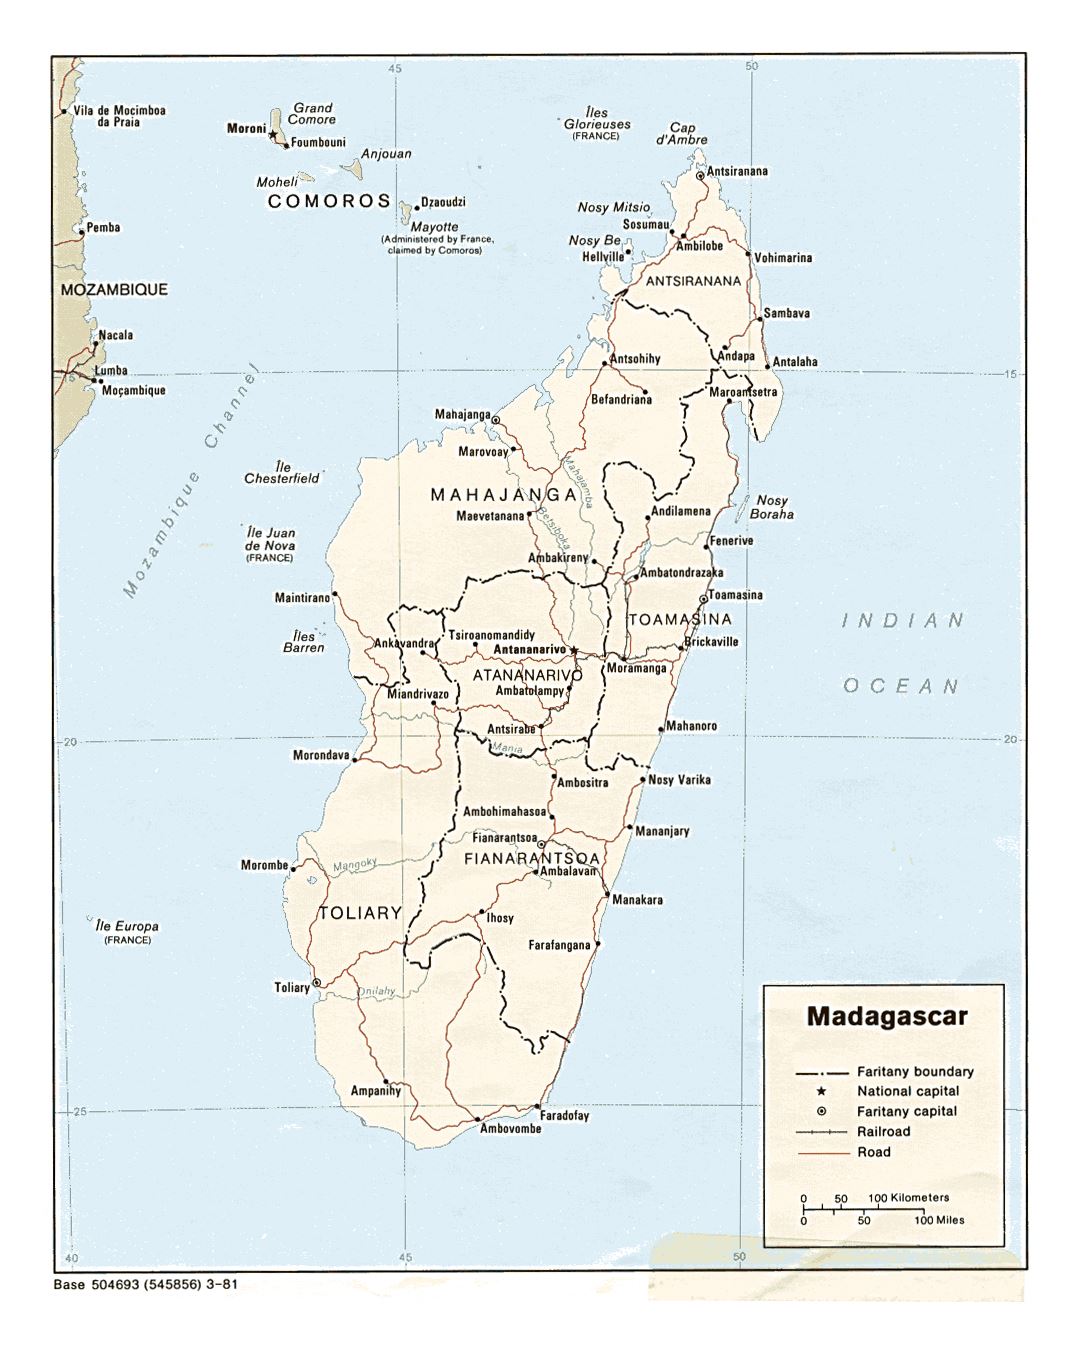 Детальная политическая и административная карта Мадагаскара с дорогами, железными дорогами и крупными городами - 1981